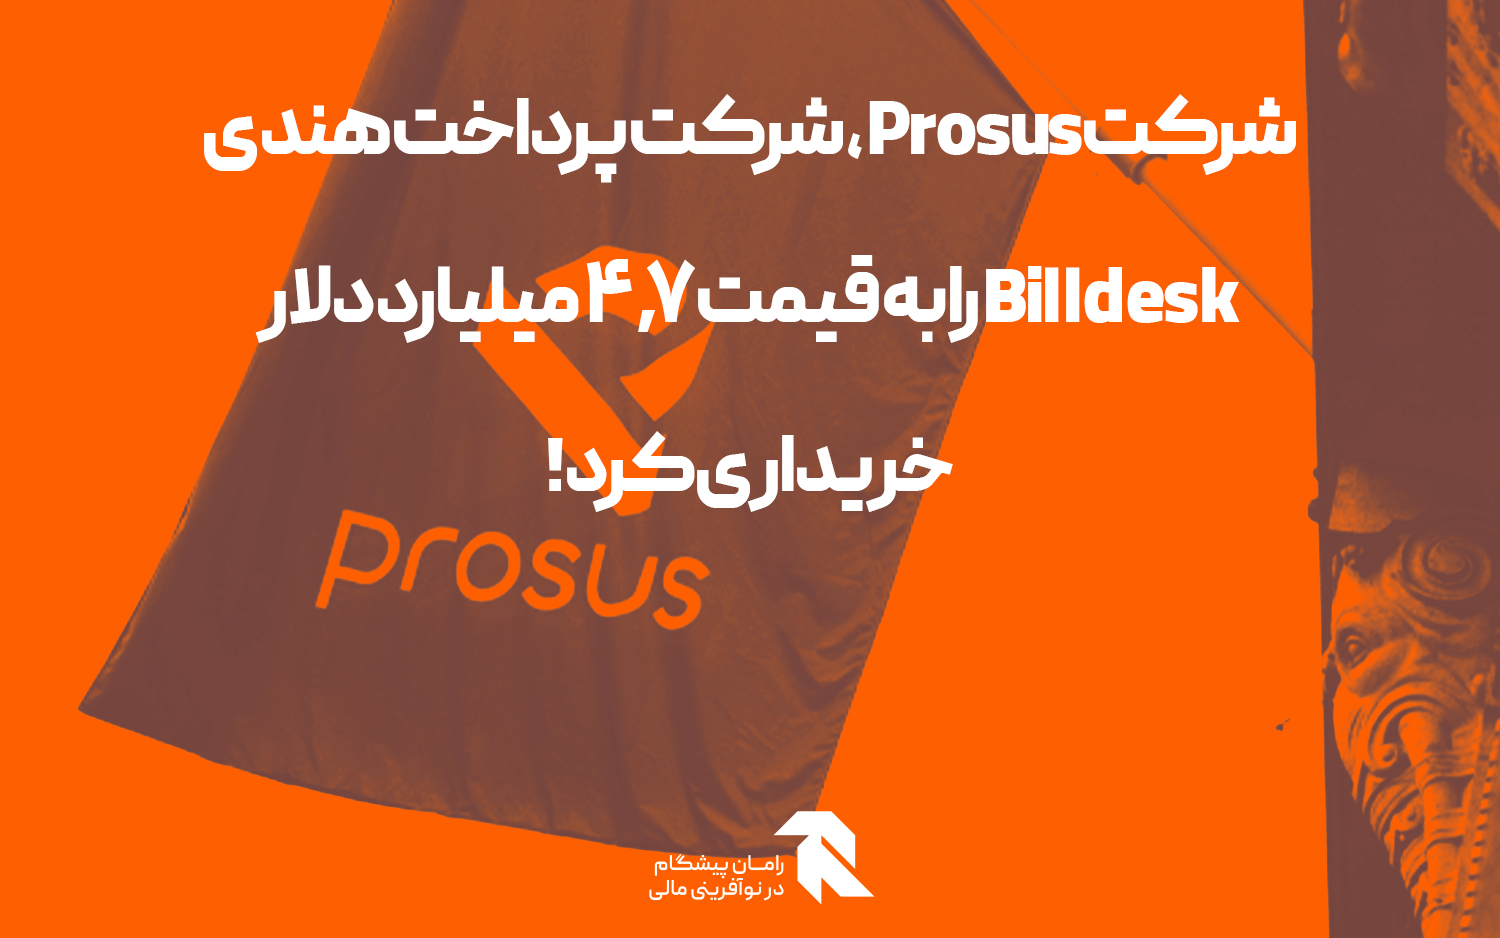 شرکت Prosus ، شرکت پرداخت هندی Billdesk را به قیمت 4.7 میلیارد دلار خریداری کرد!